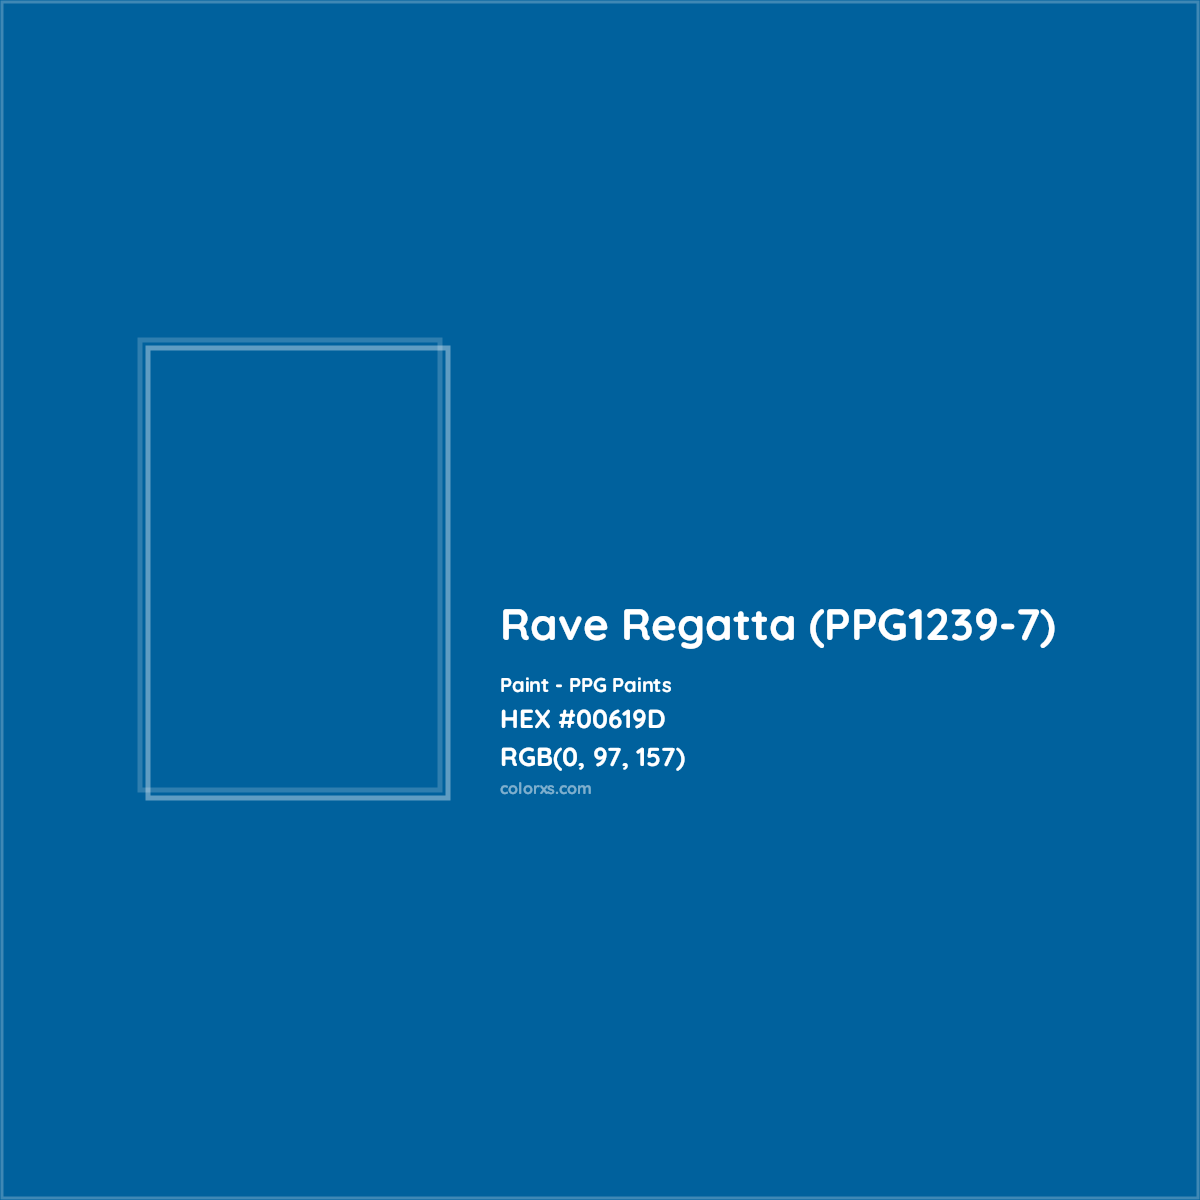 HEX #00619D Rave Regatta (PPG1239-7) Paint PPG Paints - Color Code